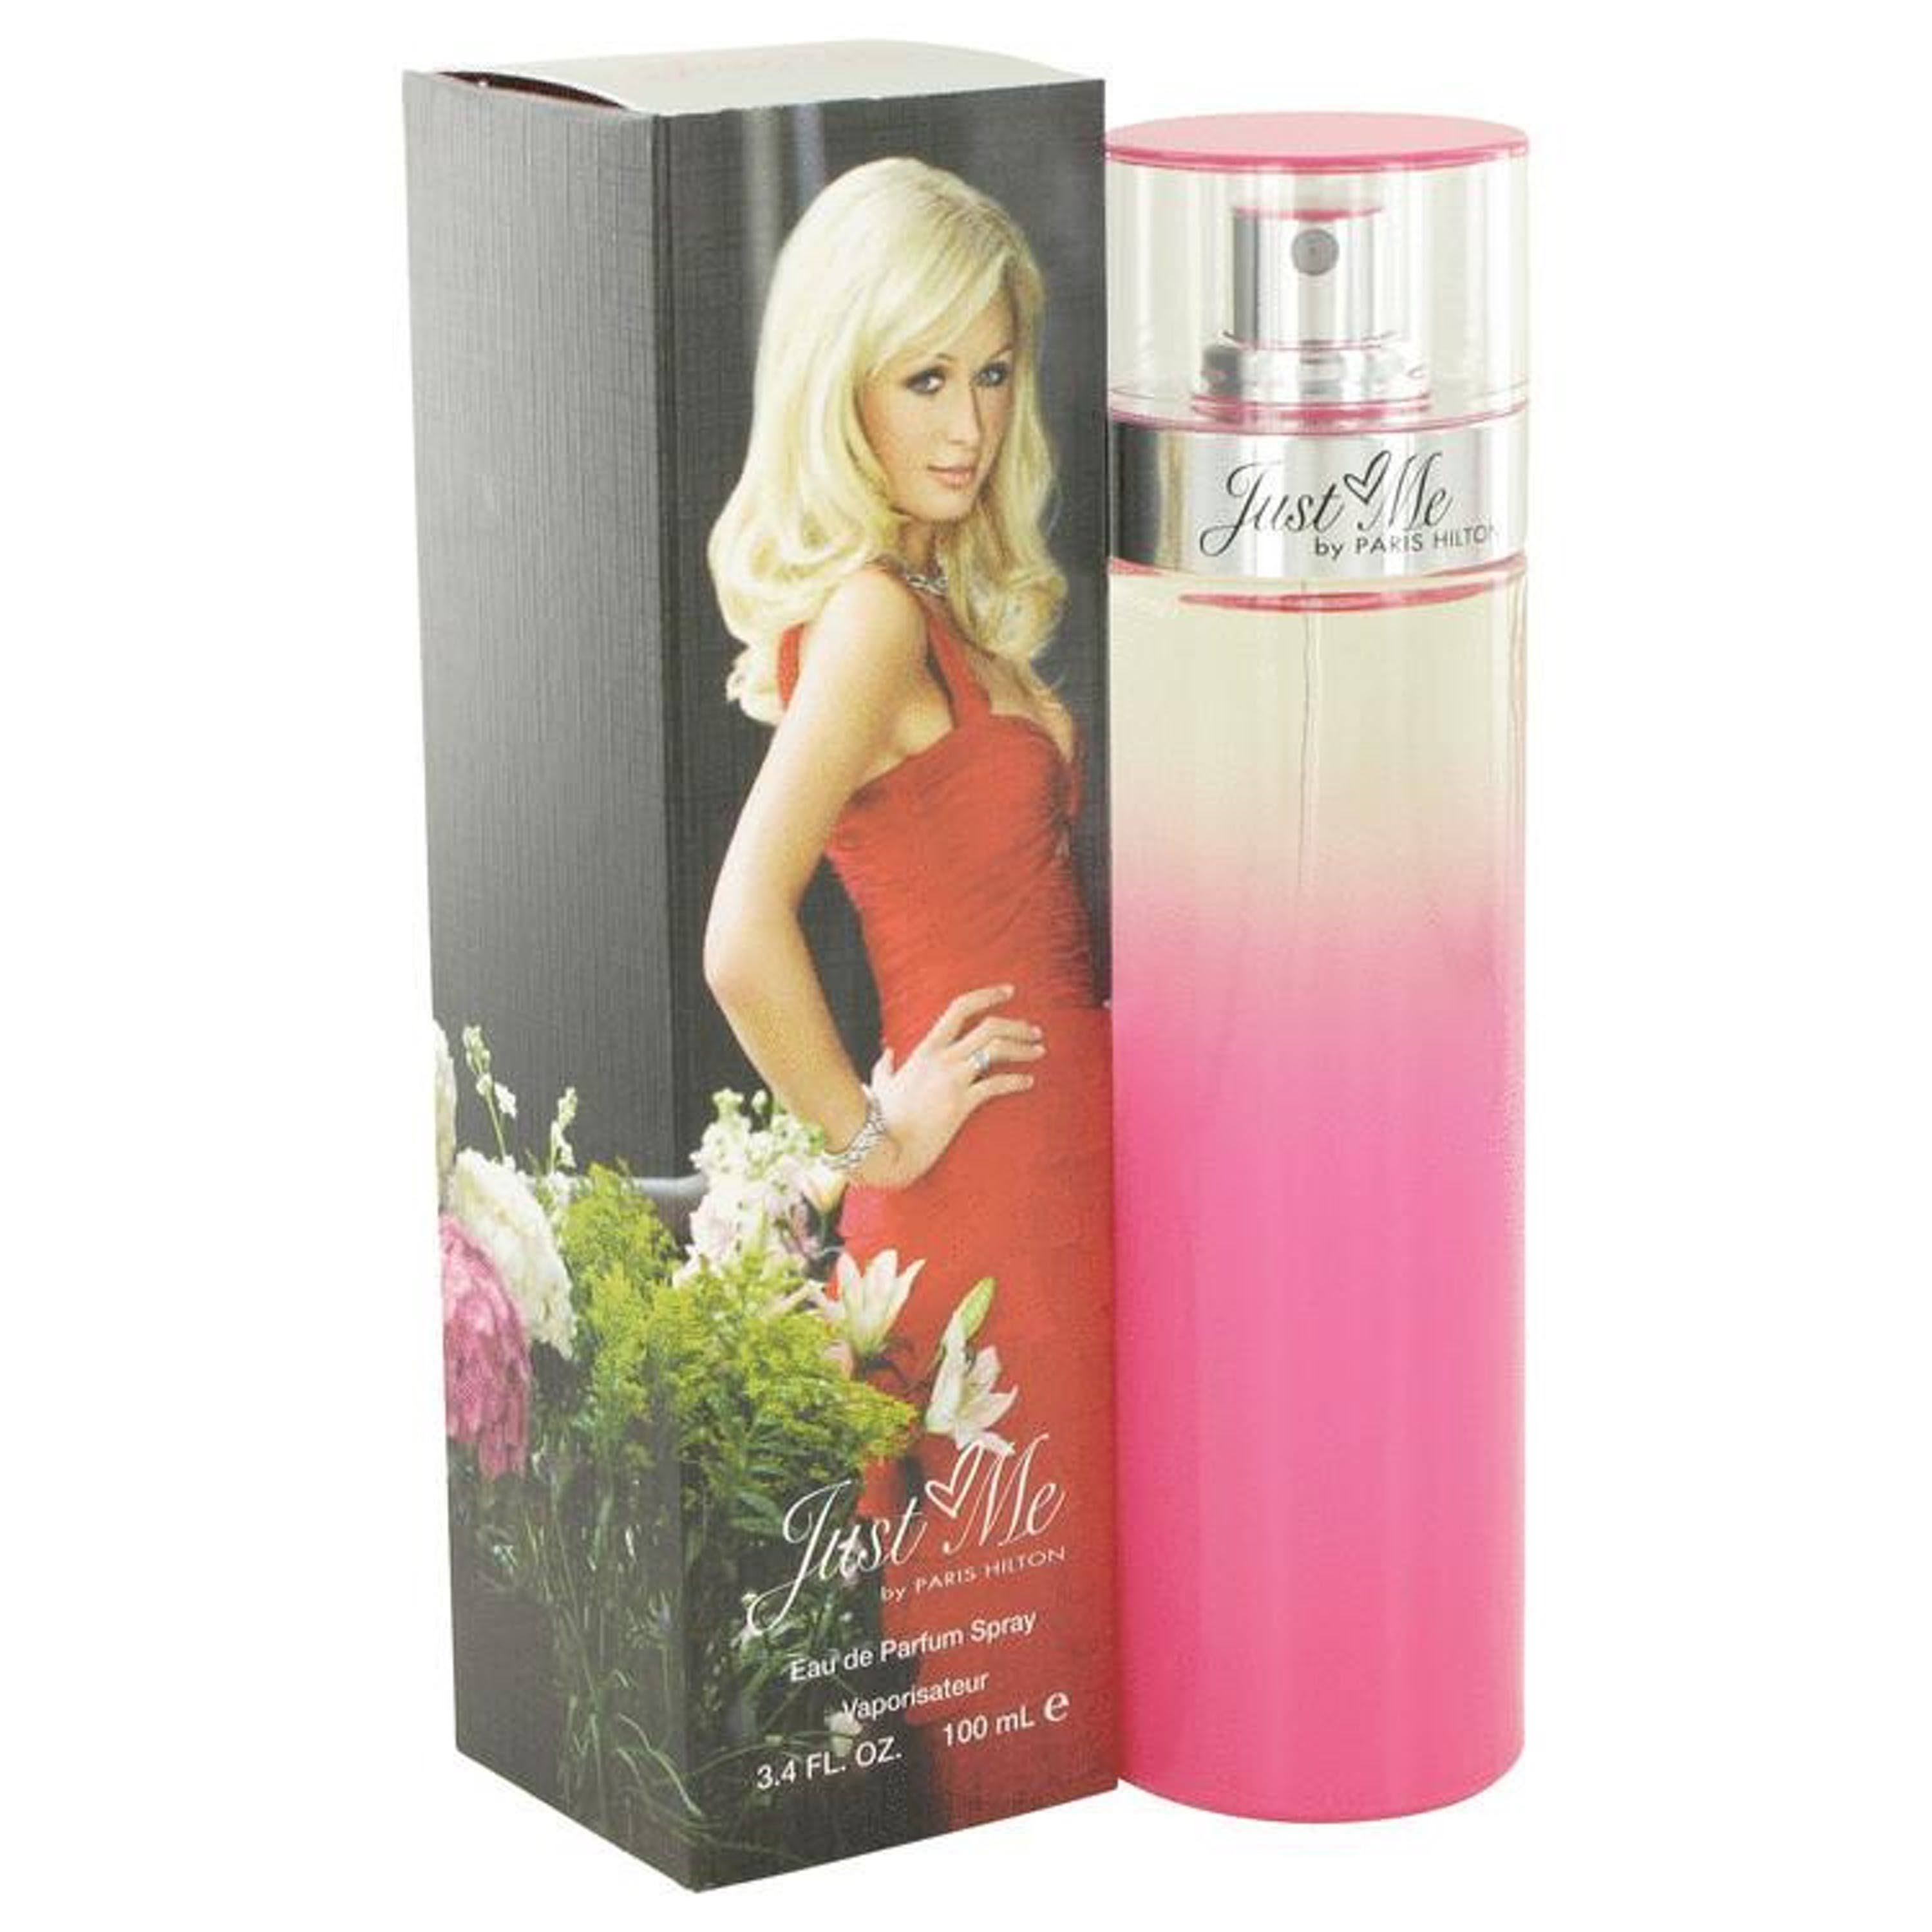 Paris Hilton Just Me for Women Eau de Parfum Spray - 100ml